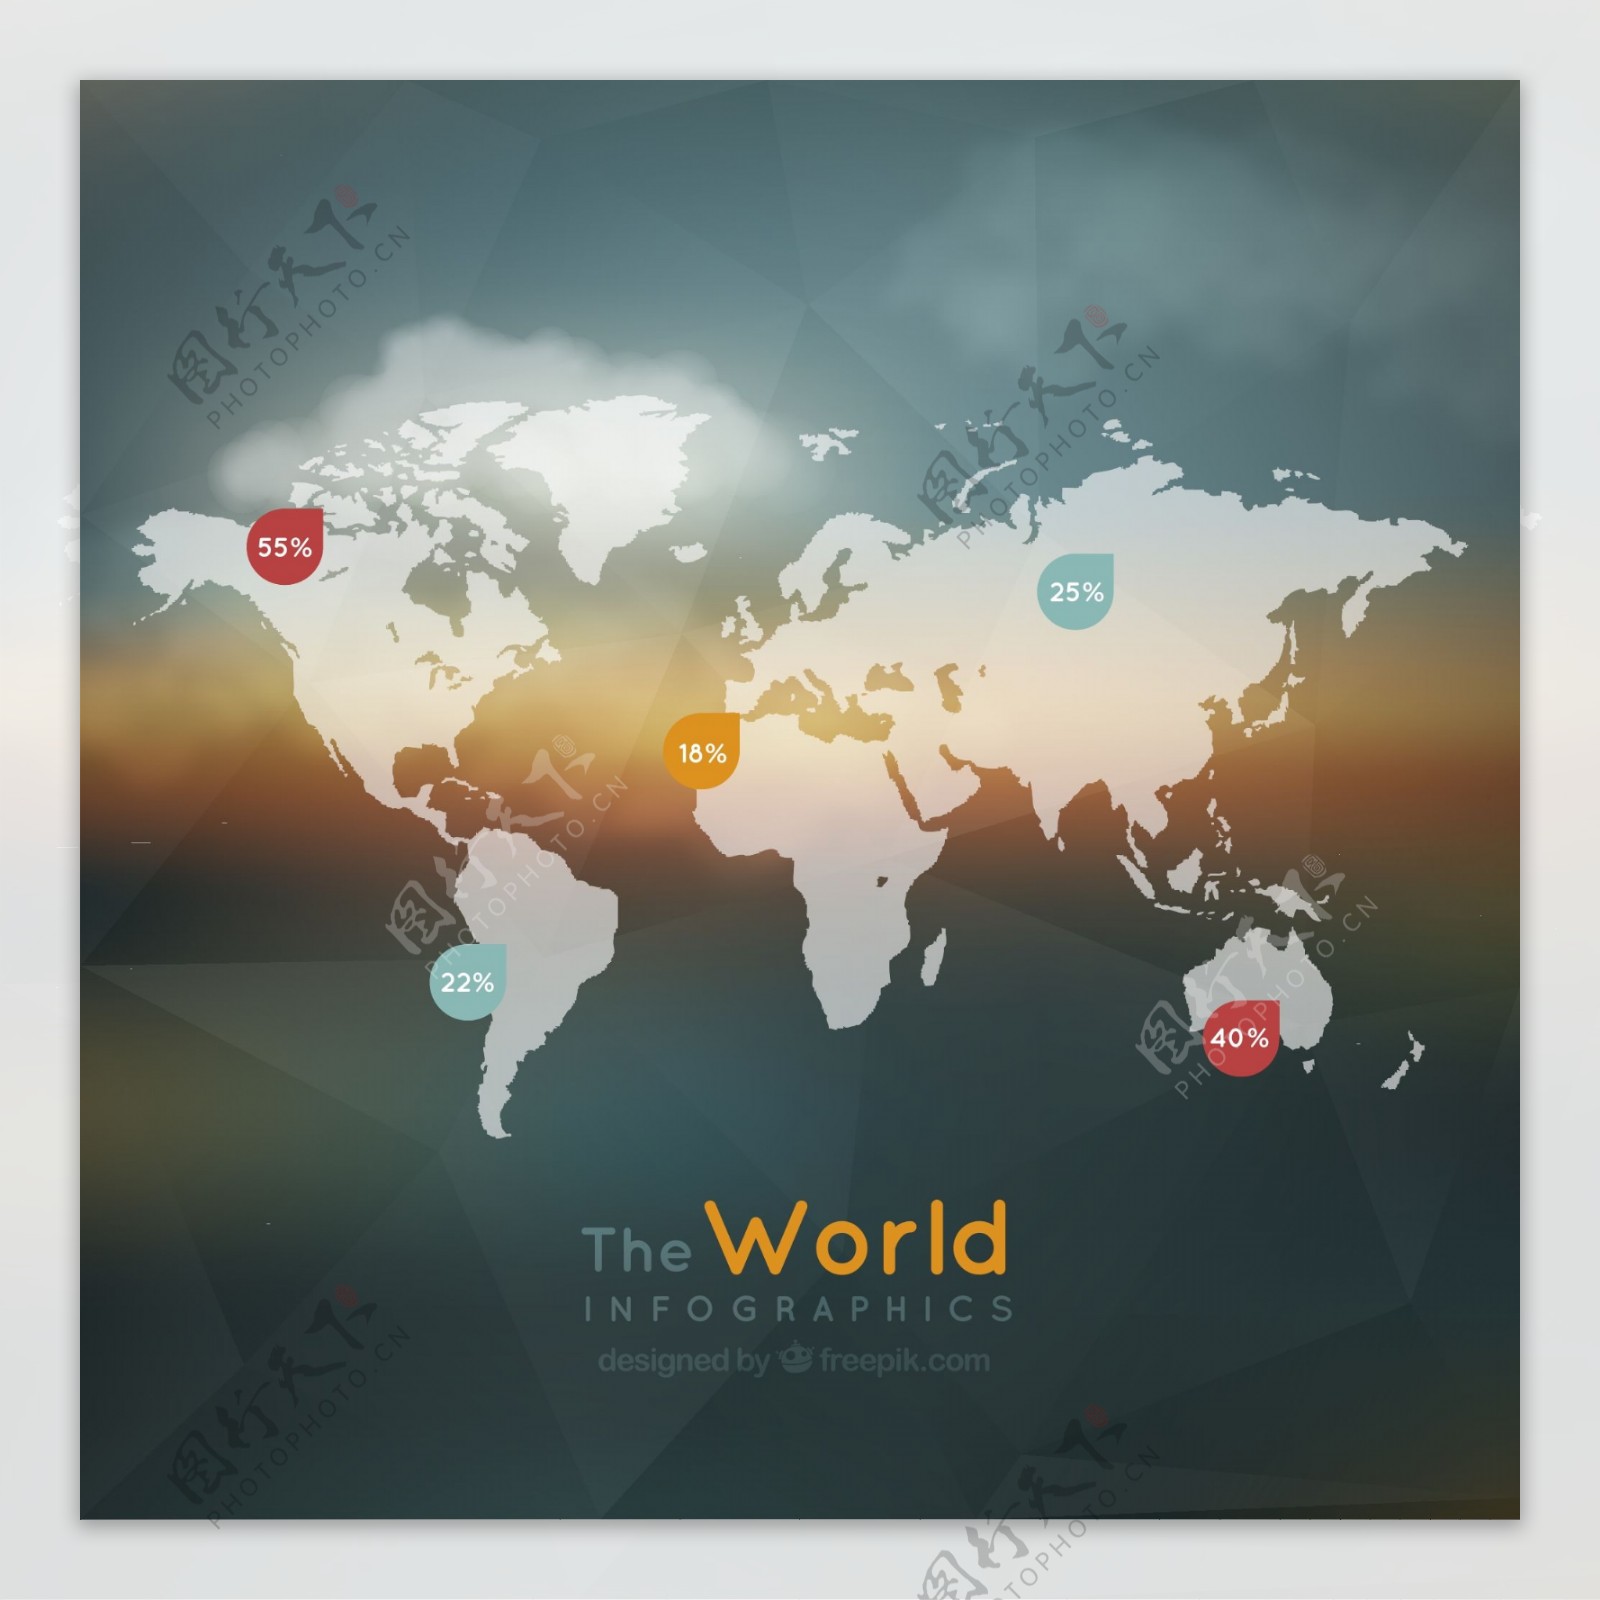 创意世界地图商务信息图矢量素材